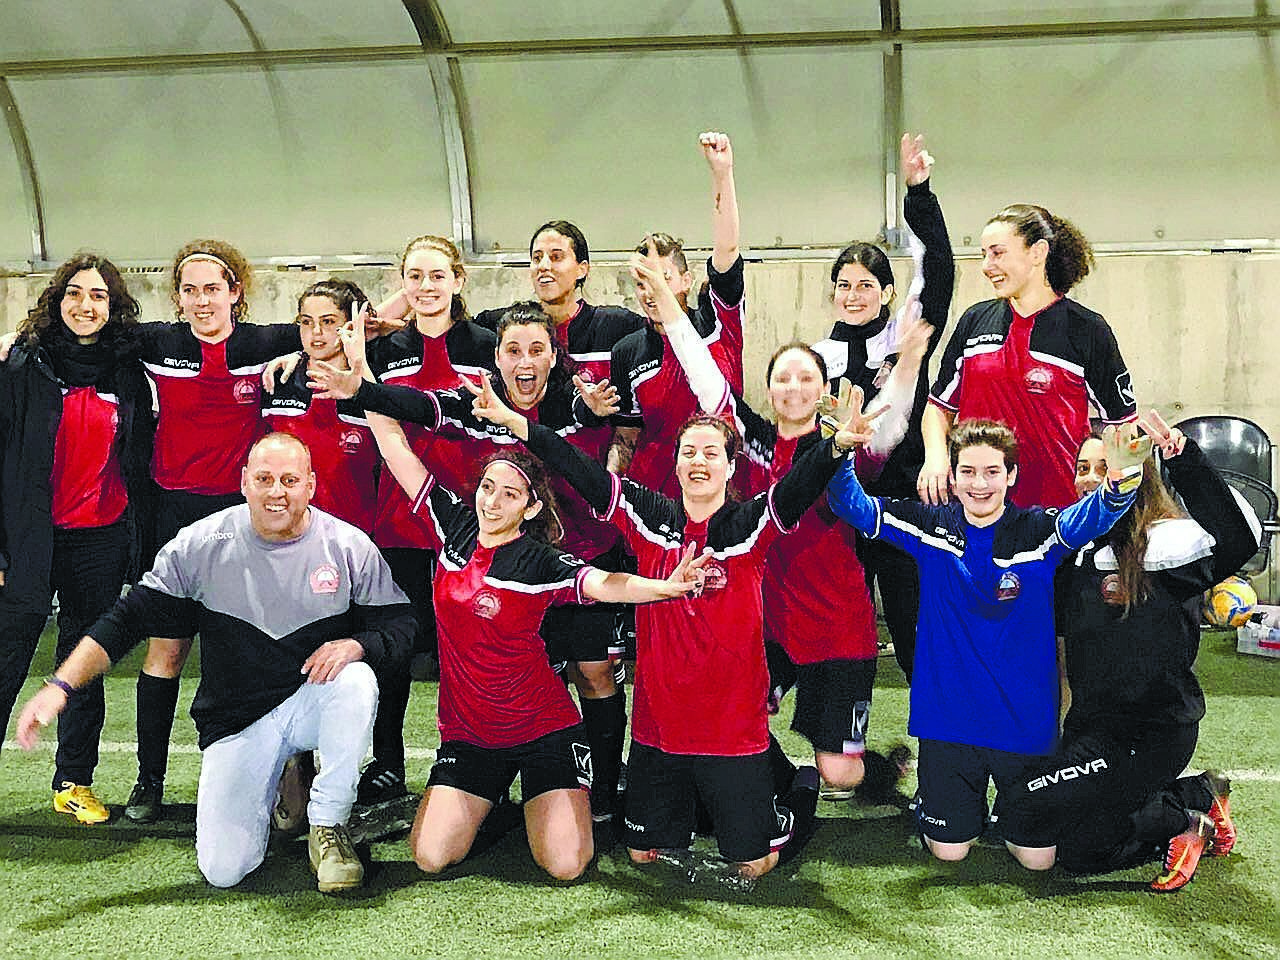 קבוצת הנשים בכדורגל של הפועל רעננה צילום: באדיבות קבוצת הנשים בכדורגל של הפועל רעננה